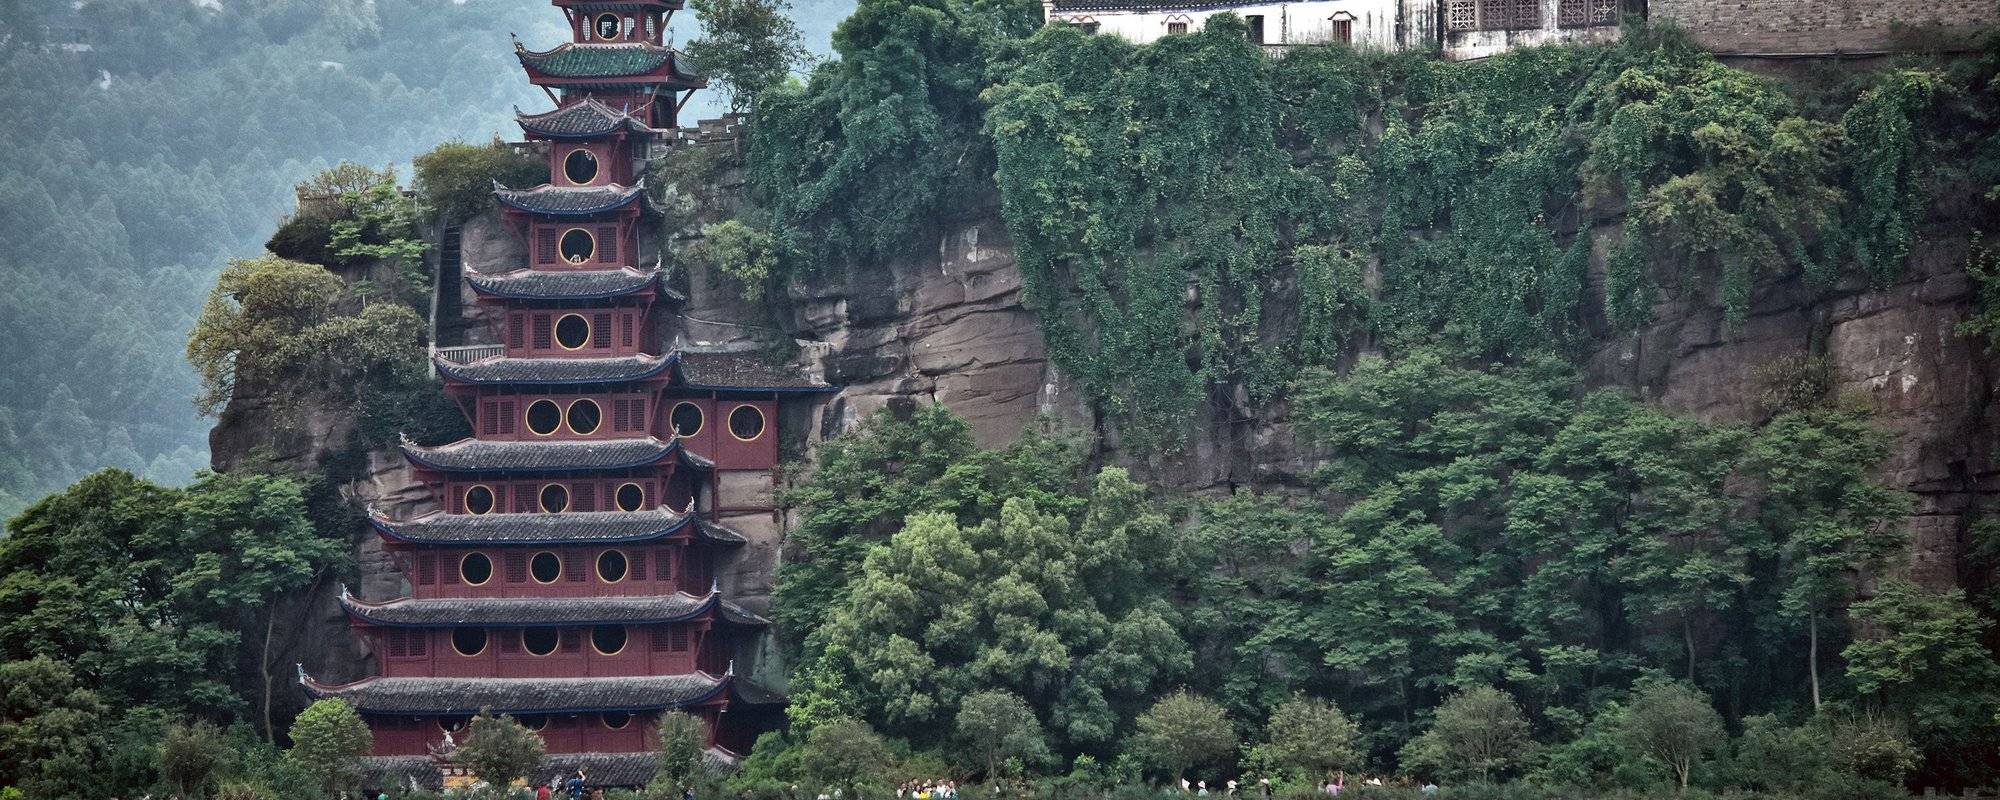 Shibaozai Pagoda 石宝寨